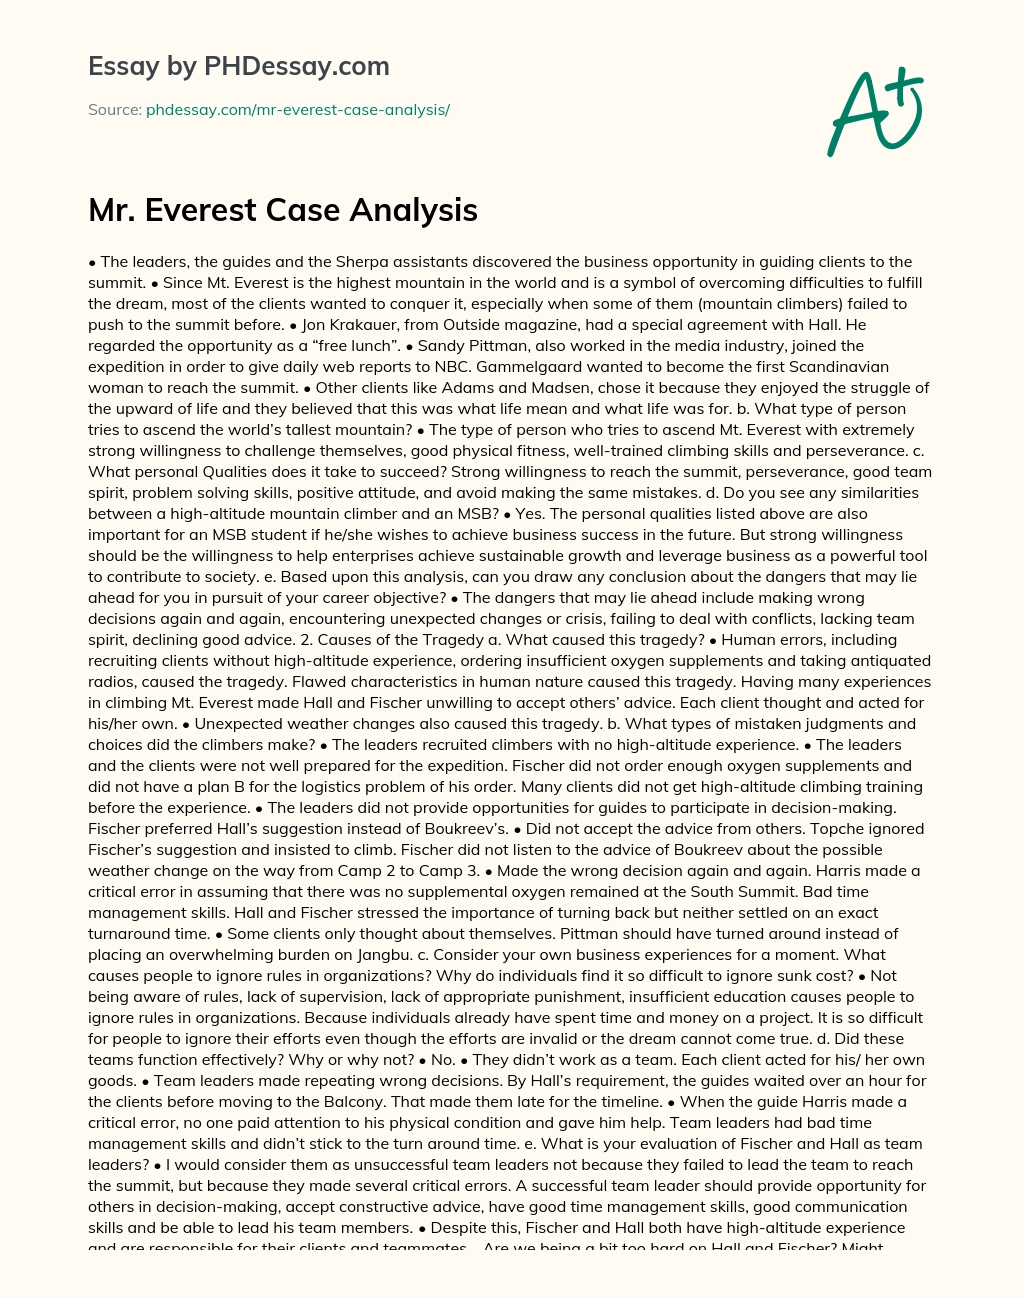 Mr. Everest Case Analysis essay